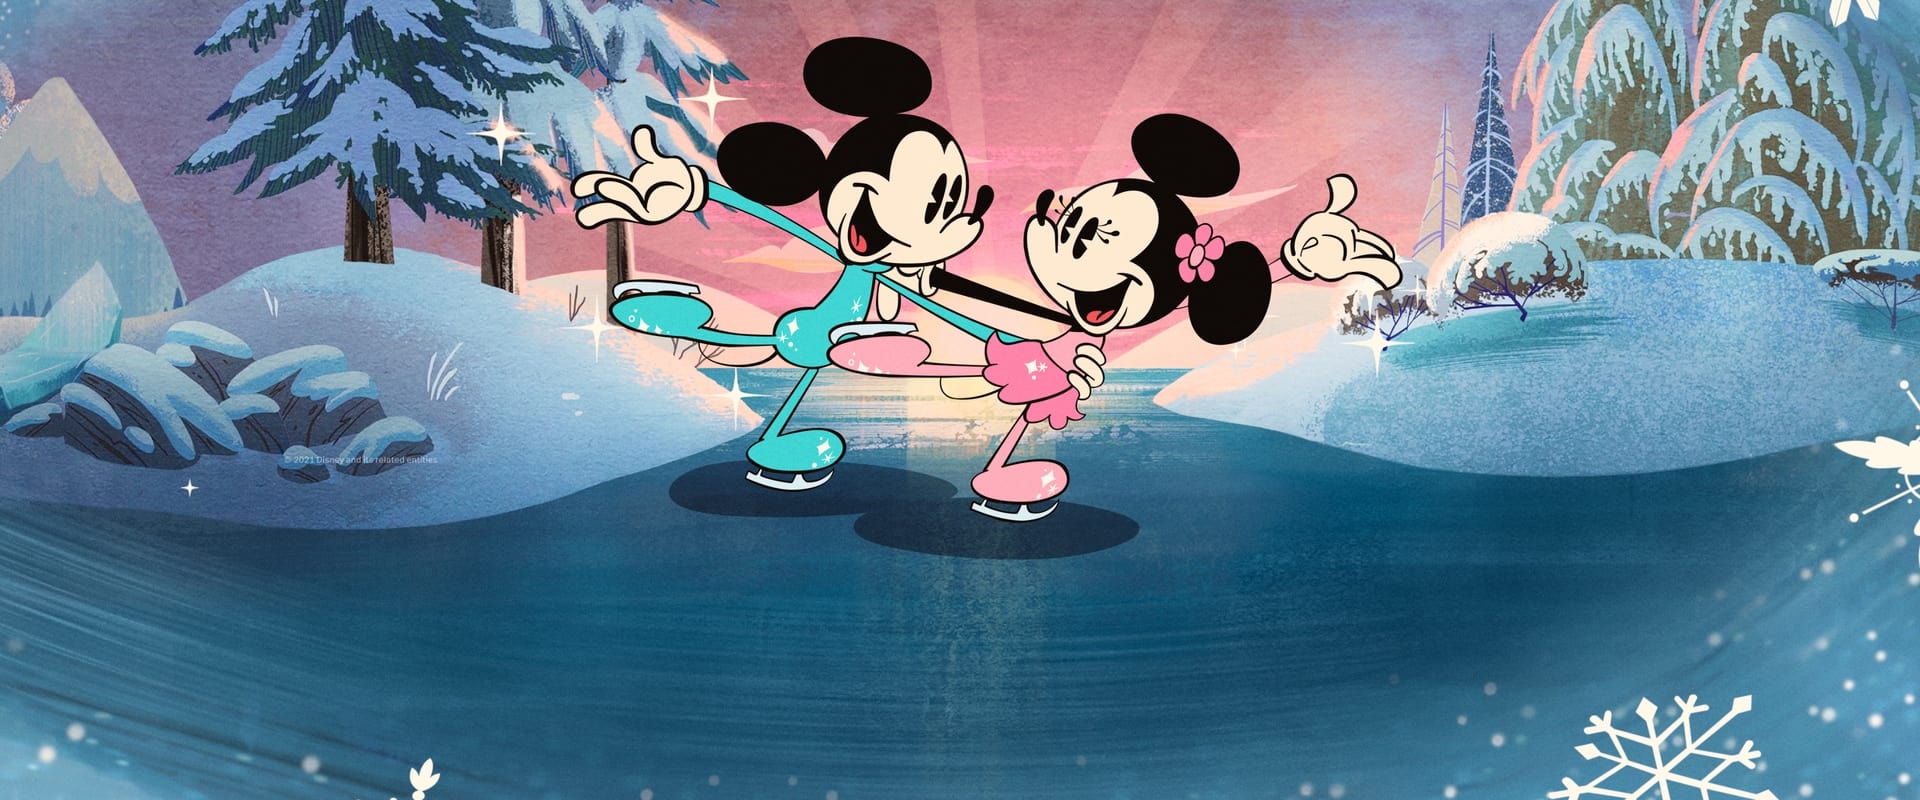 L'hiver merveilleux de Mickey